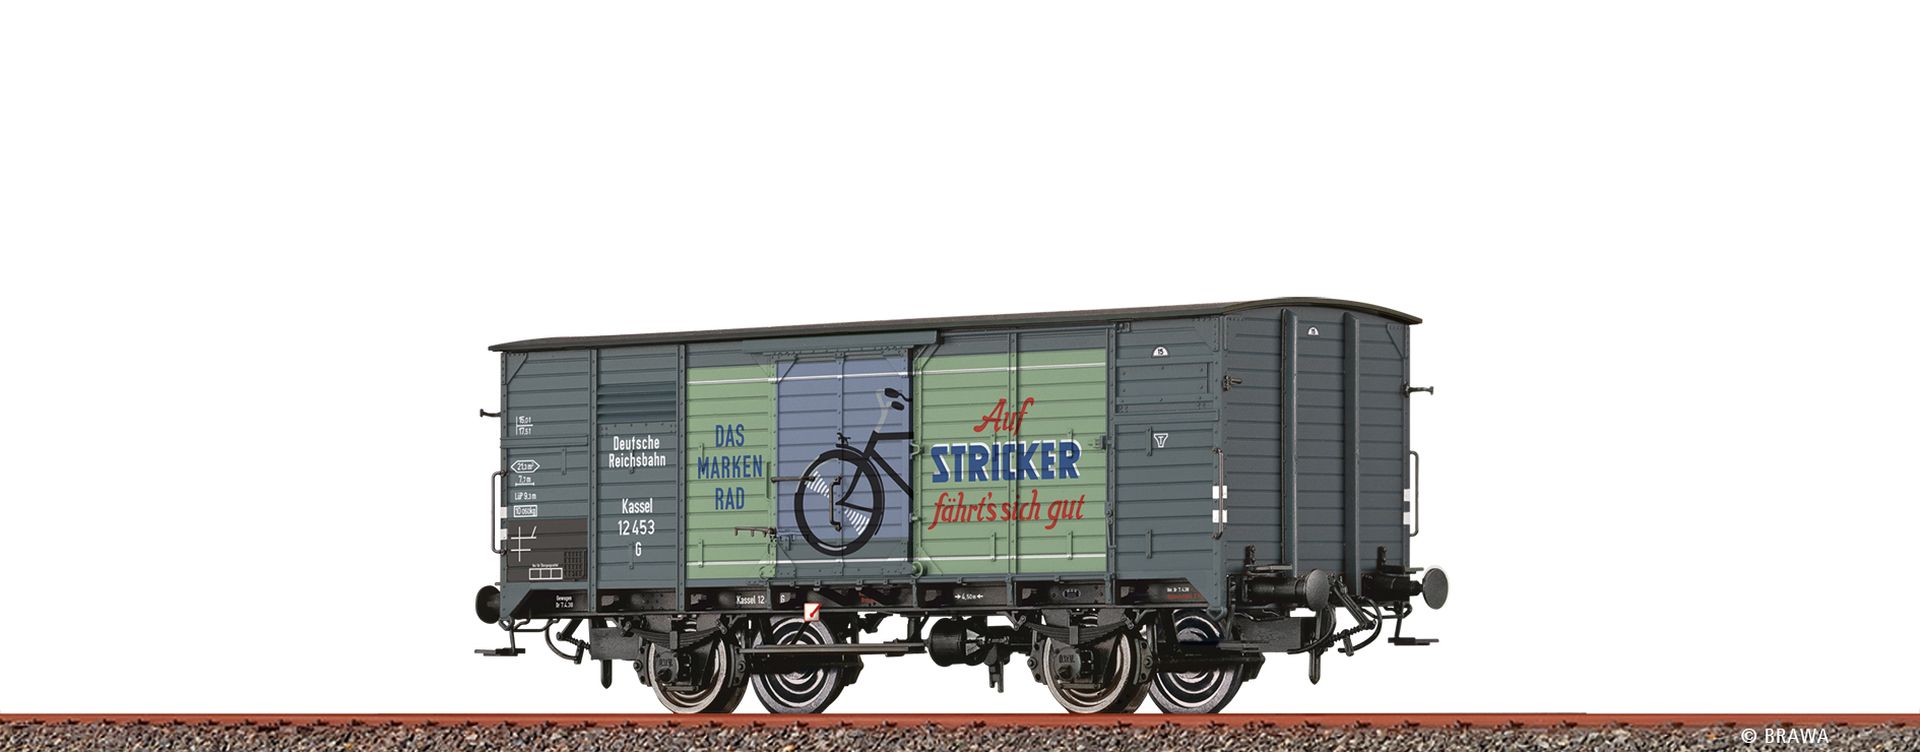 Brawa 50789 - Gedeckter Güterwagen G 'Stricker', DRG, Ep.II